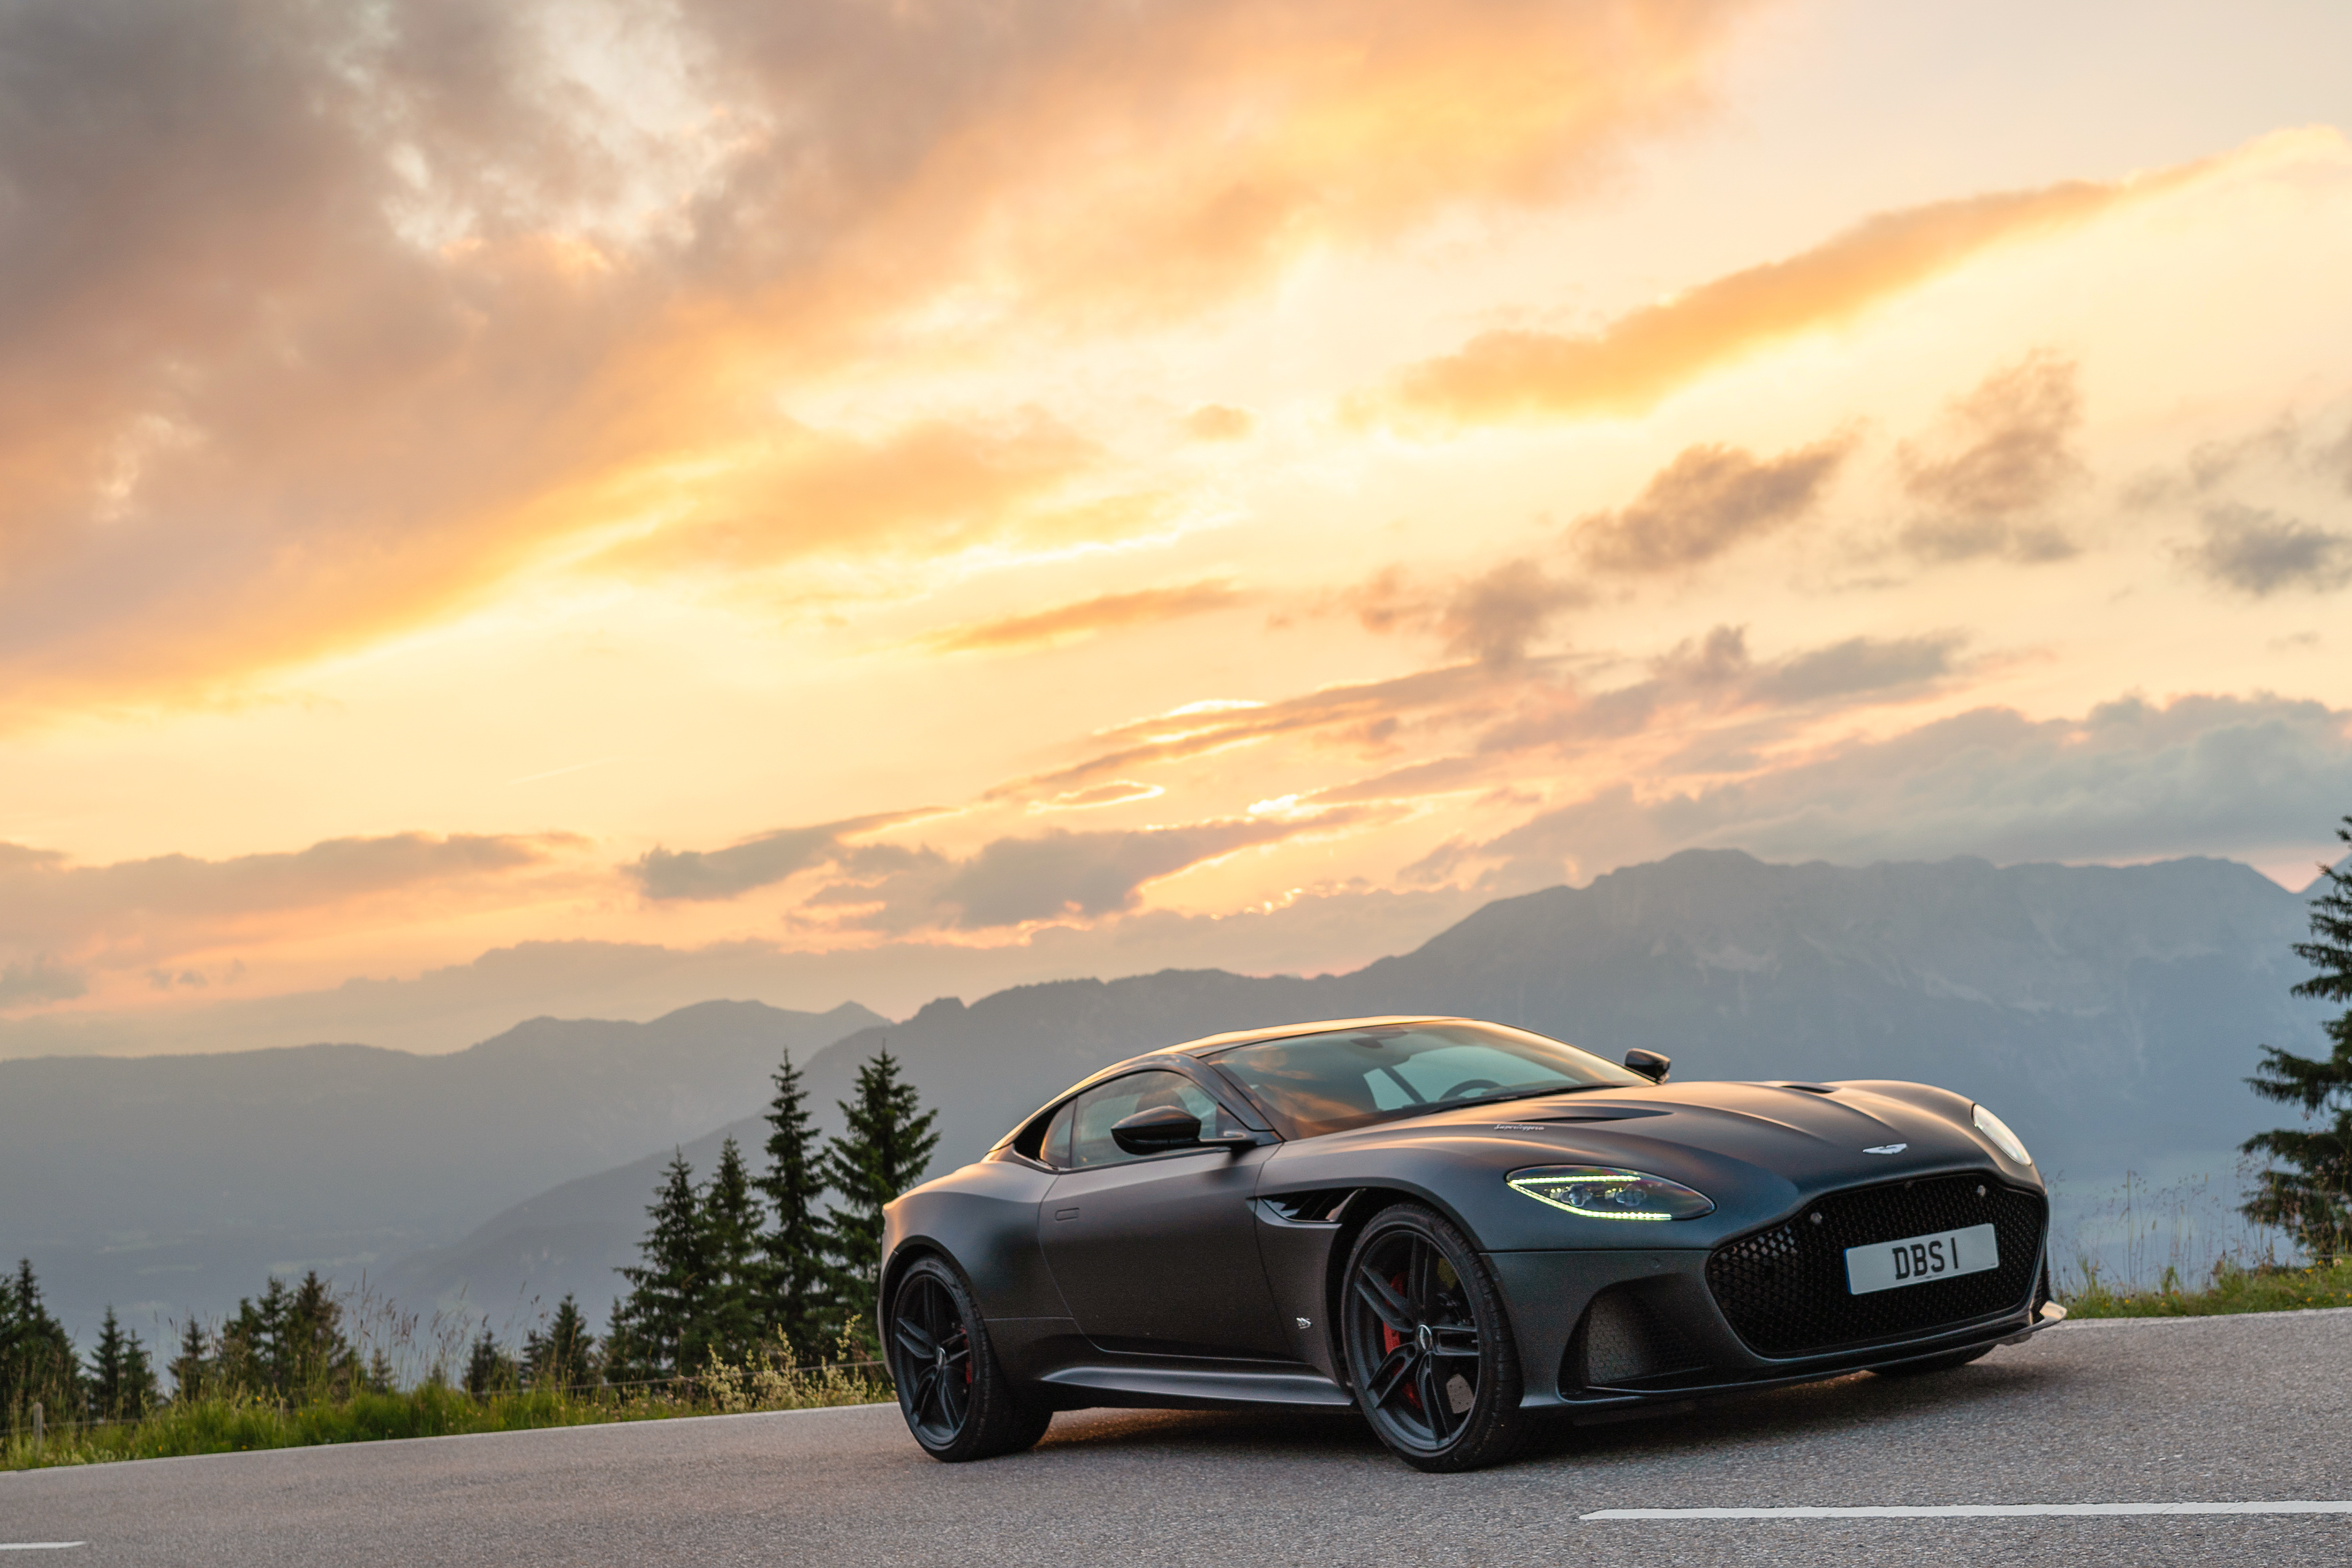 Aston Martin On Display